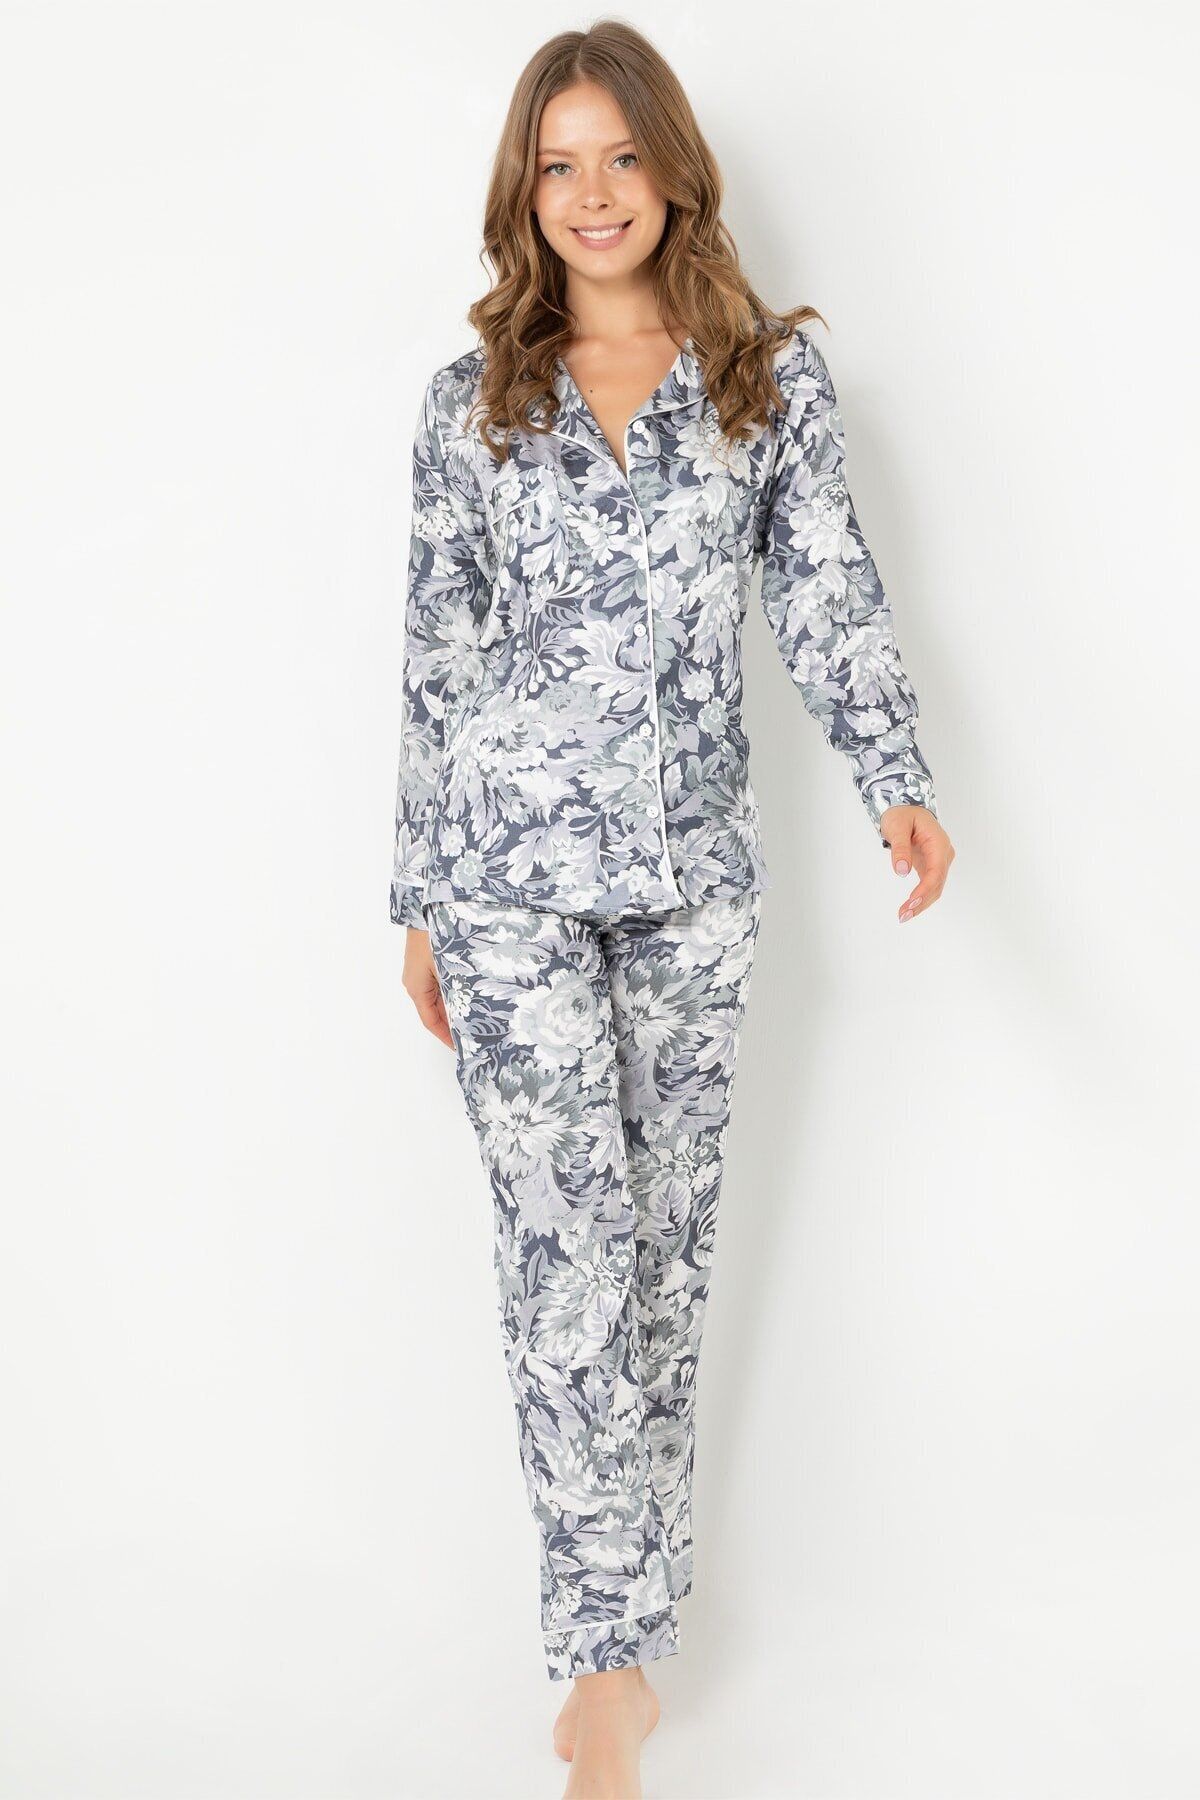 DoReMi Mist Flower Uzun Kollu Pijama Takımı